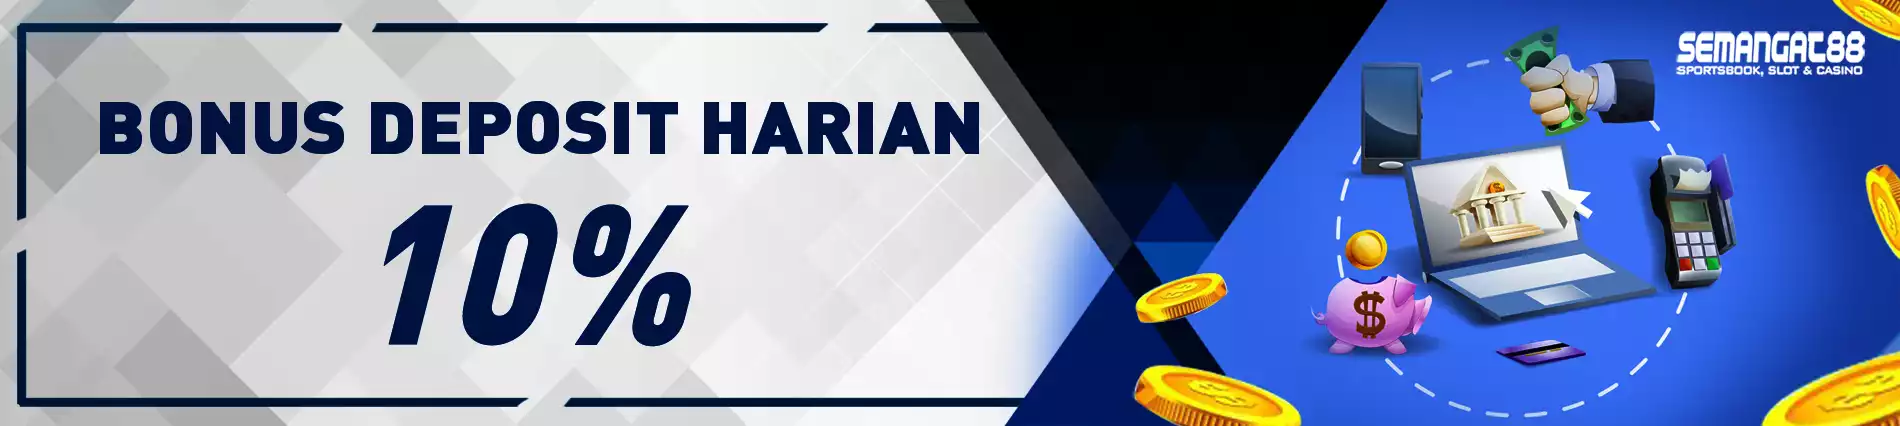 Deposit Harian Bonus 10%